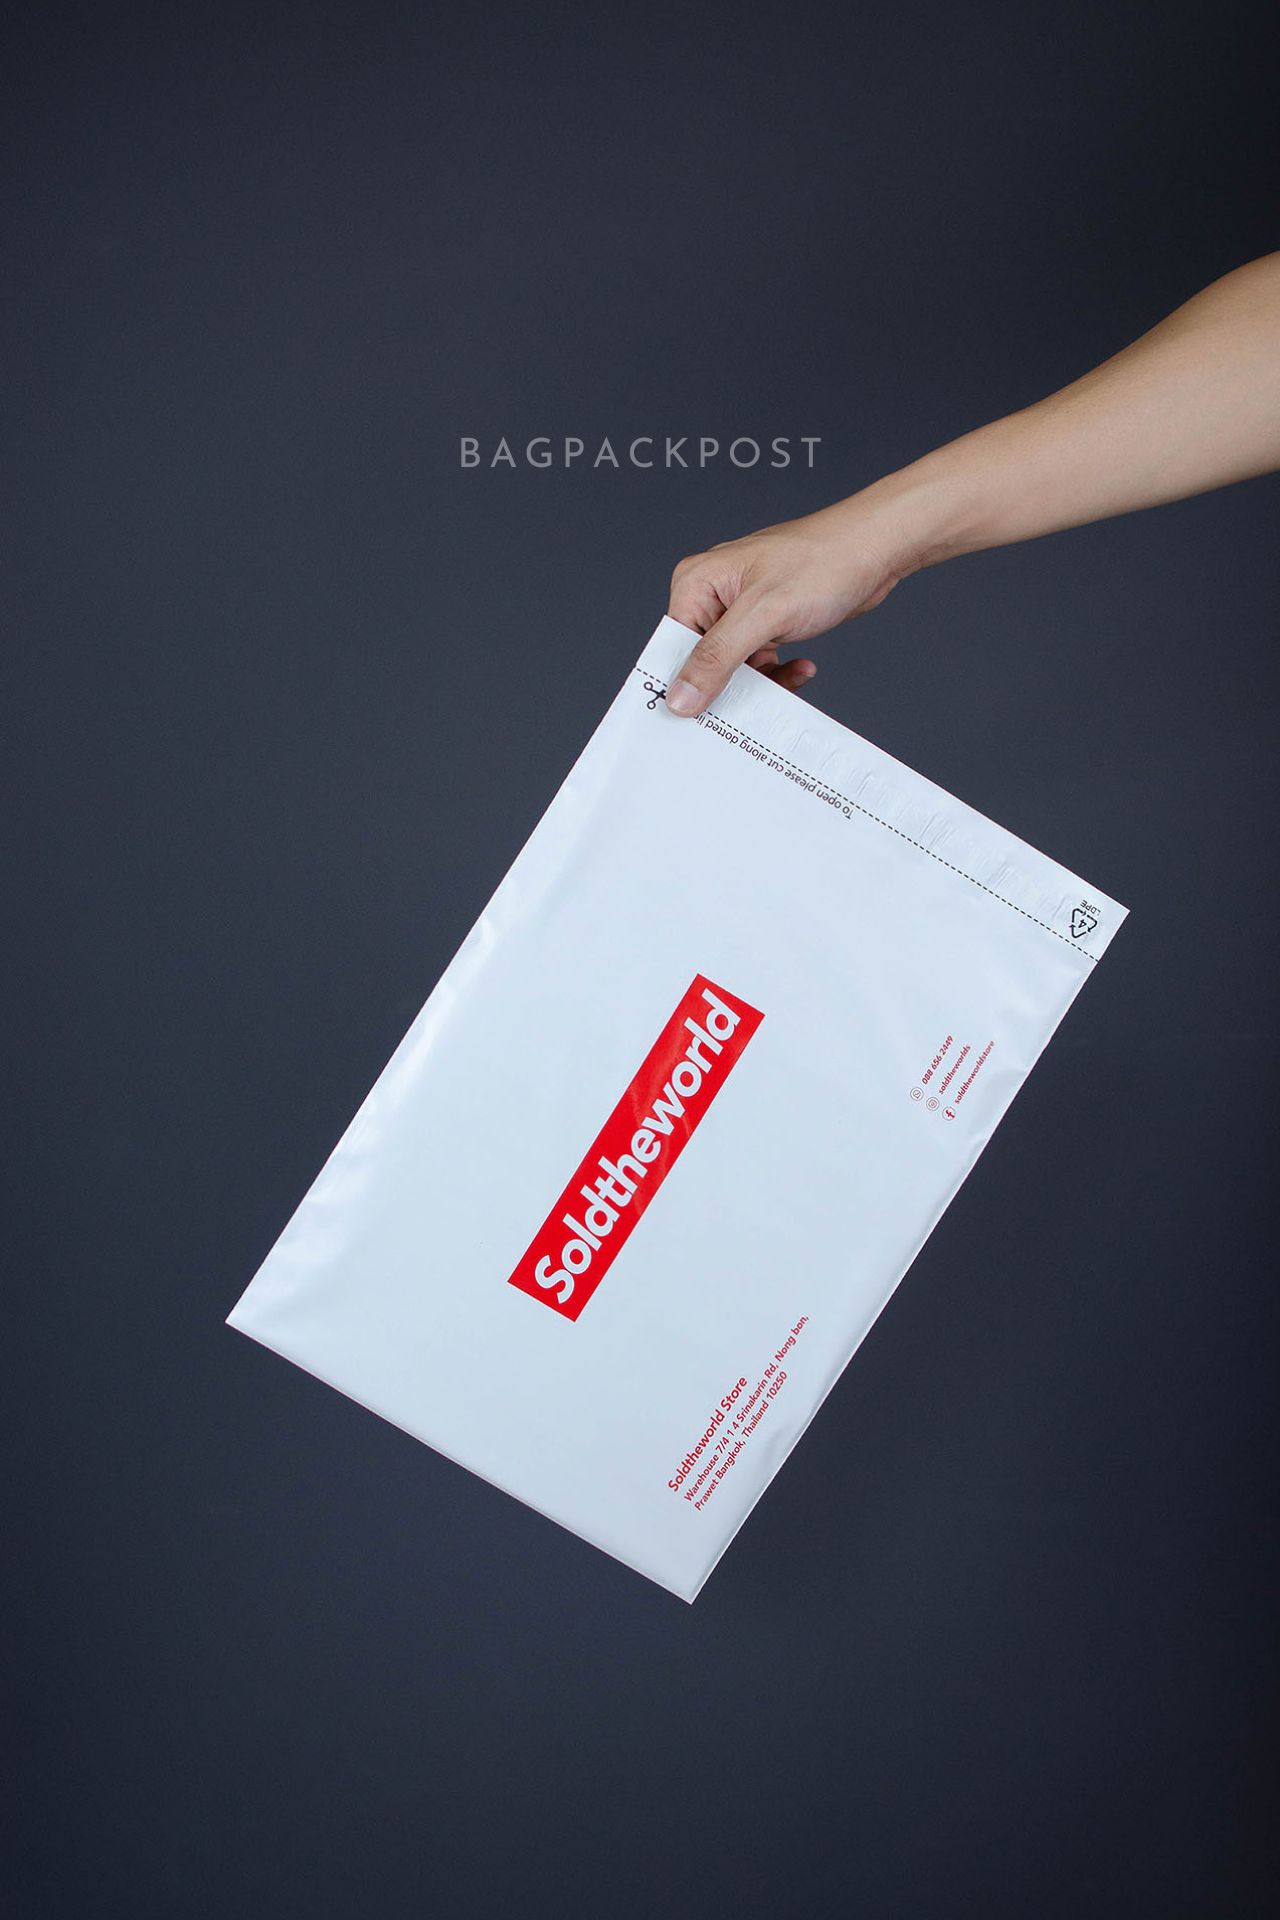 ผลิตถุงไปรษณีย์ ซองไปรษณีย์พิมพ์ลาย SoldTheWorldStore ซองไปรษณีย์สีขาว ถุงไปรษณีย์พิมพ์ลาย 1 BagPackPost